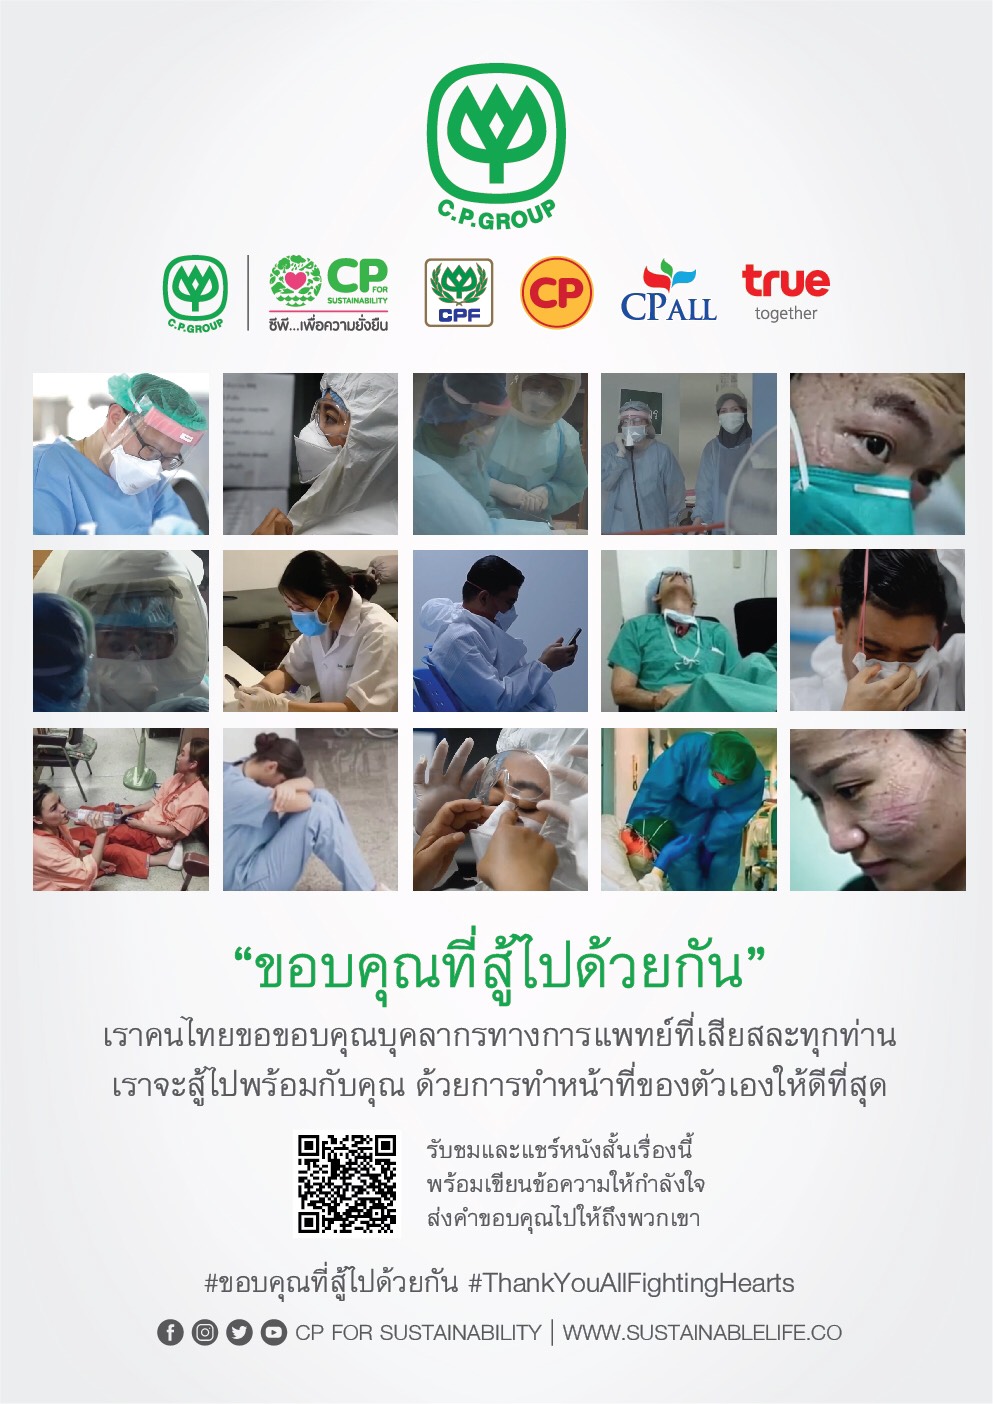 ขอบคุณในความเสียสละของนักรบชุดขาว แถวหน้าสู้โควิด-19 ร่วมส่งกำลังใจให้แพทย์พยาบาลบุคลากรทางการแพทย์ และคนไทยทุกคนมีพลัง ฝ่าฟันวิกฤตไปด้วยกัน